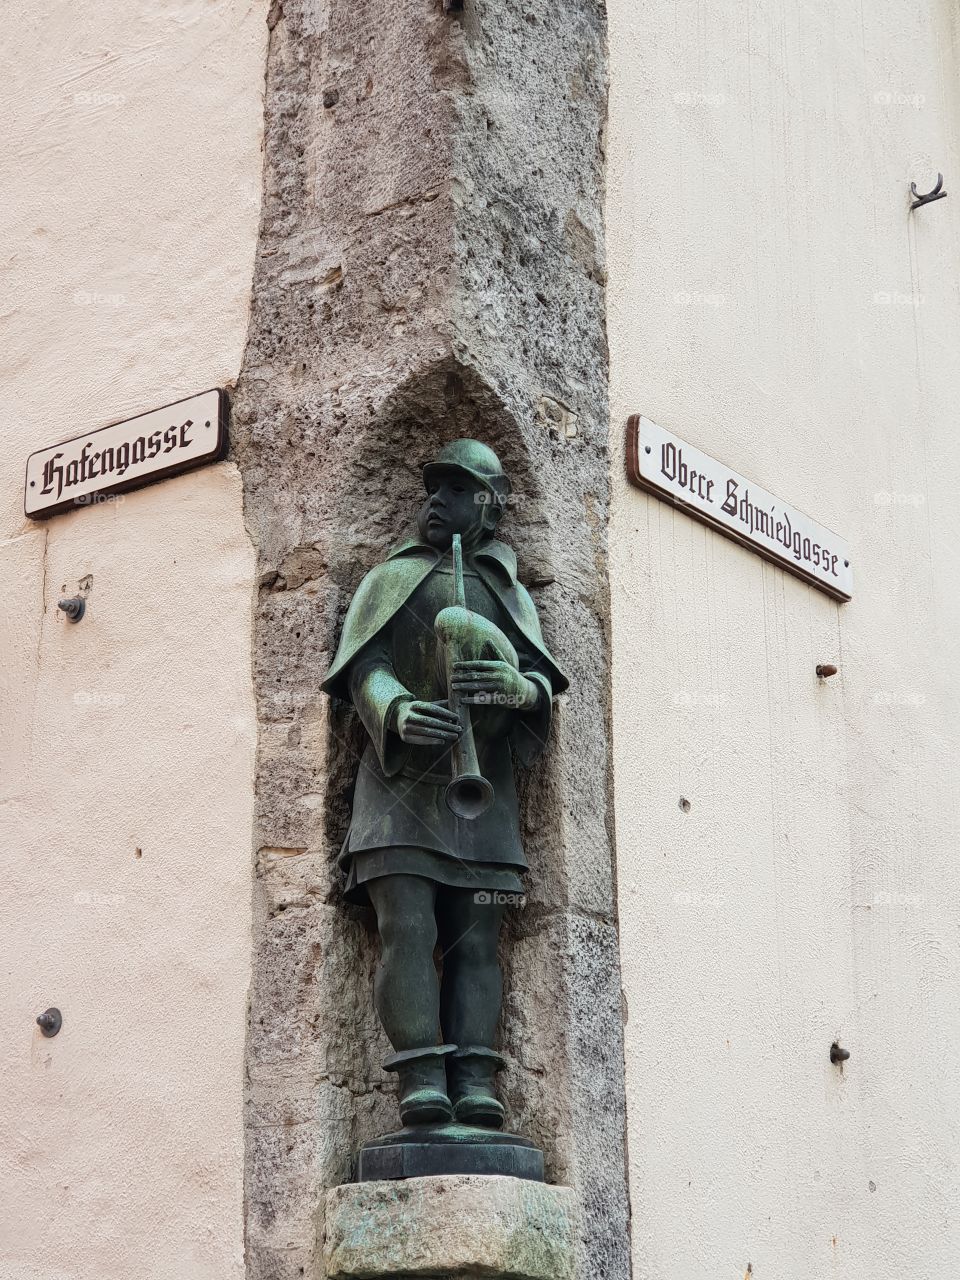 Rothenburg ob der Tauber street corner statue